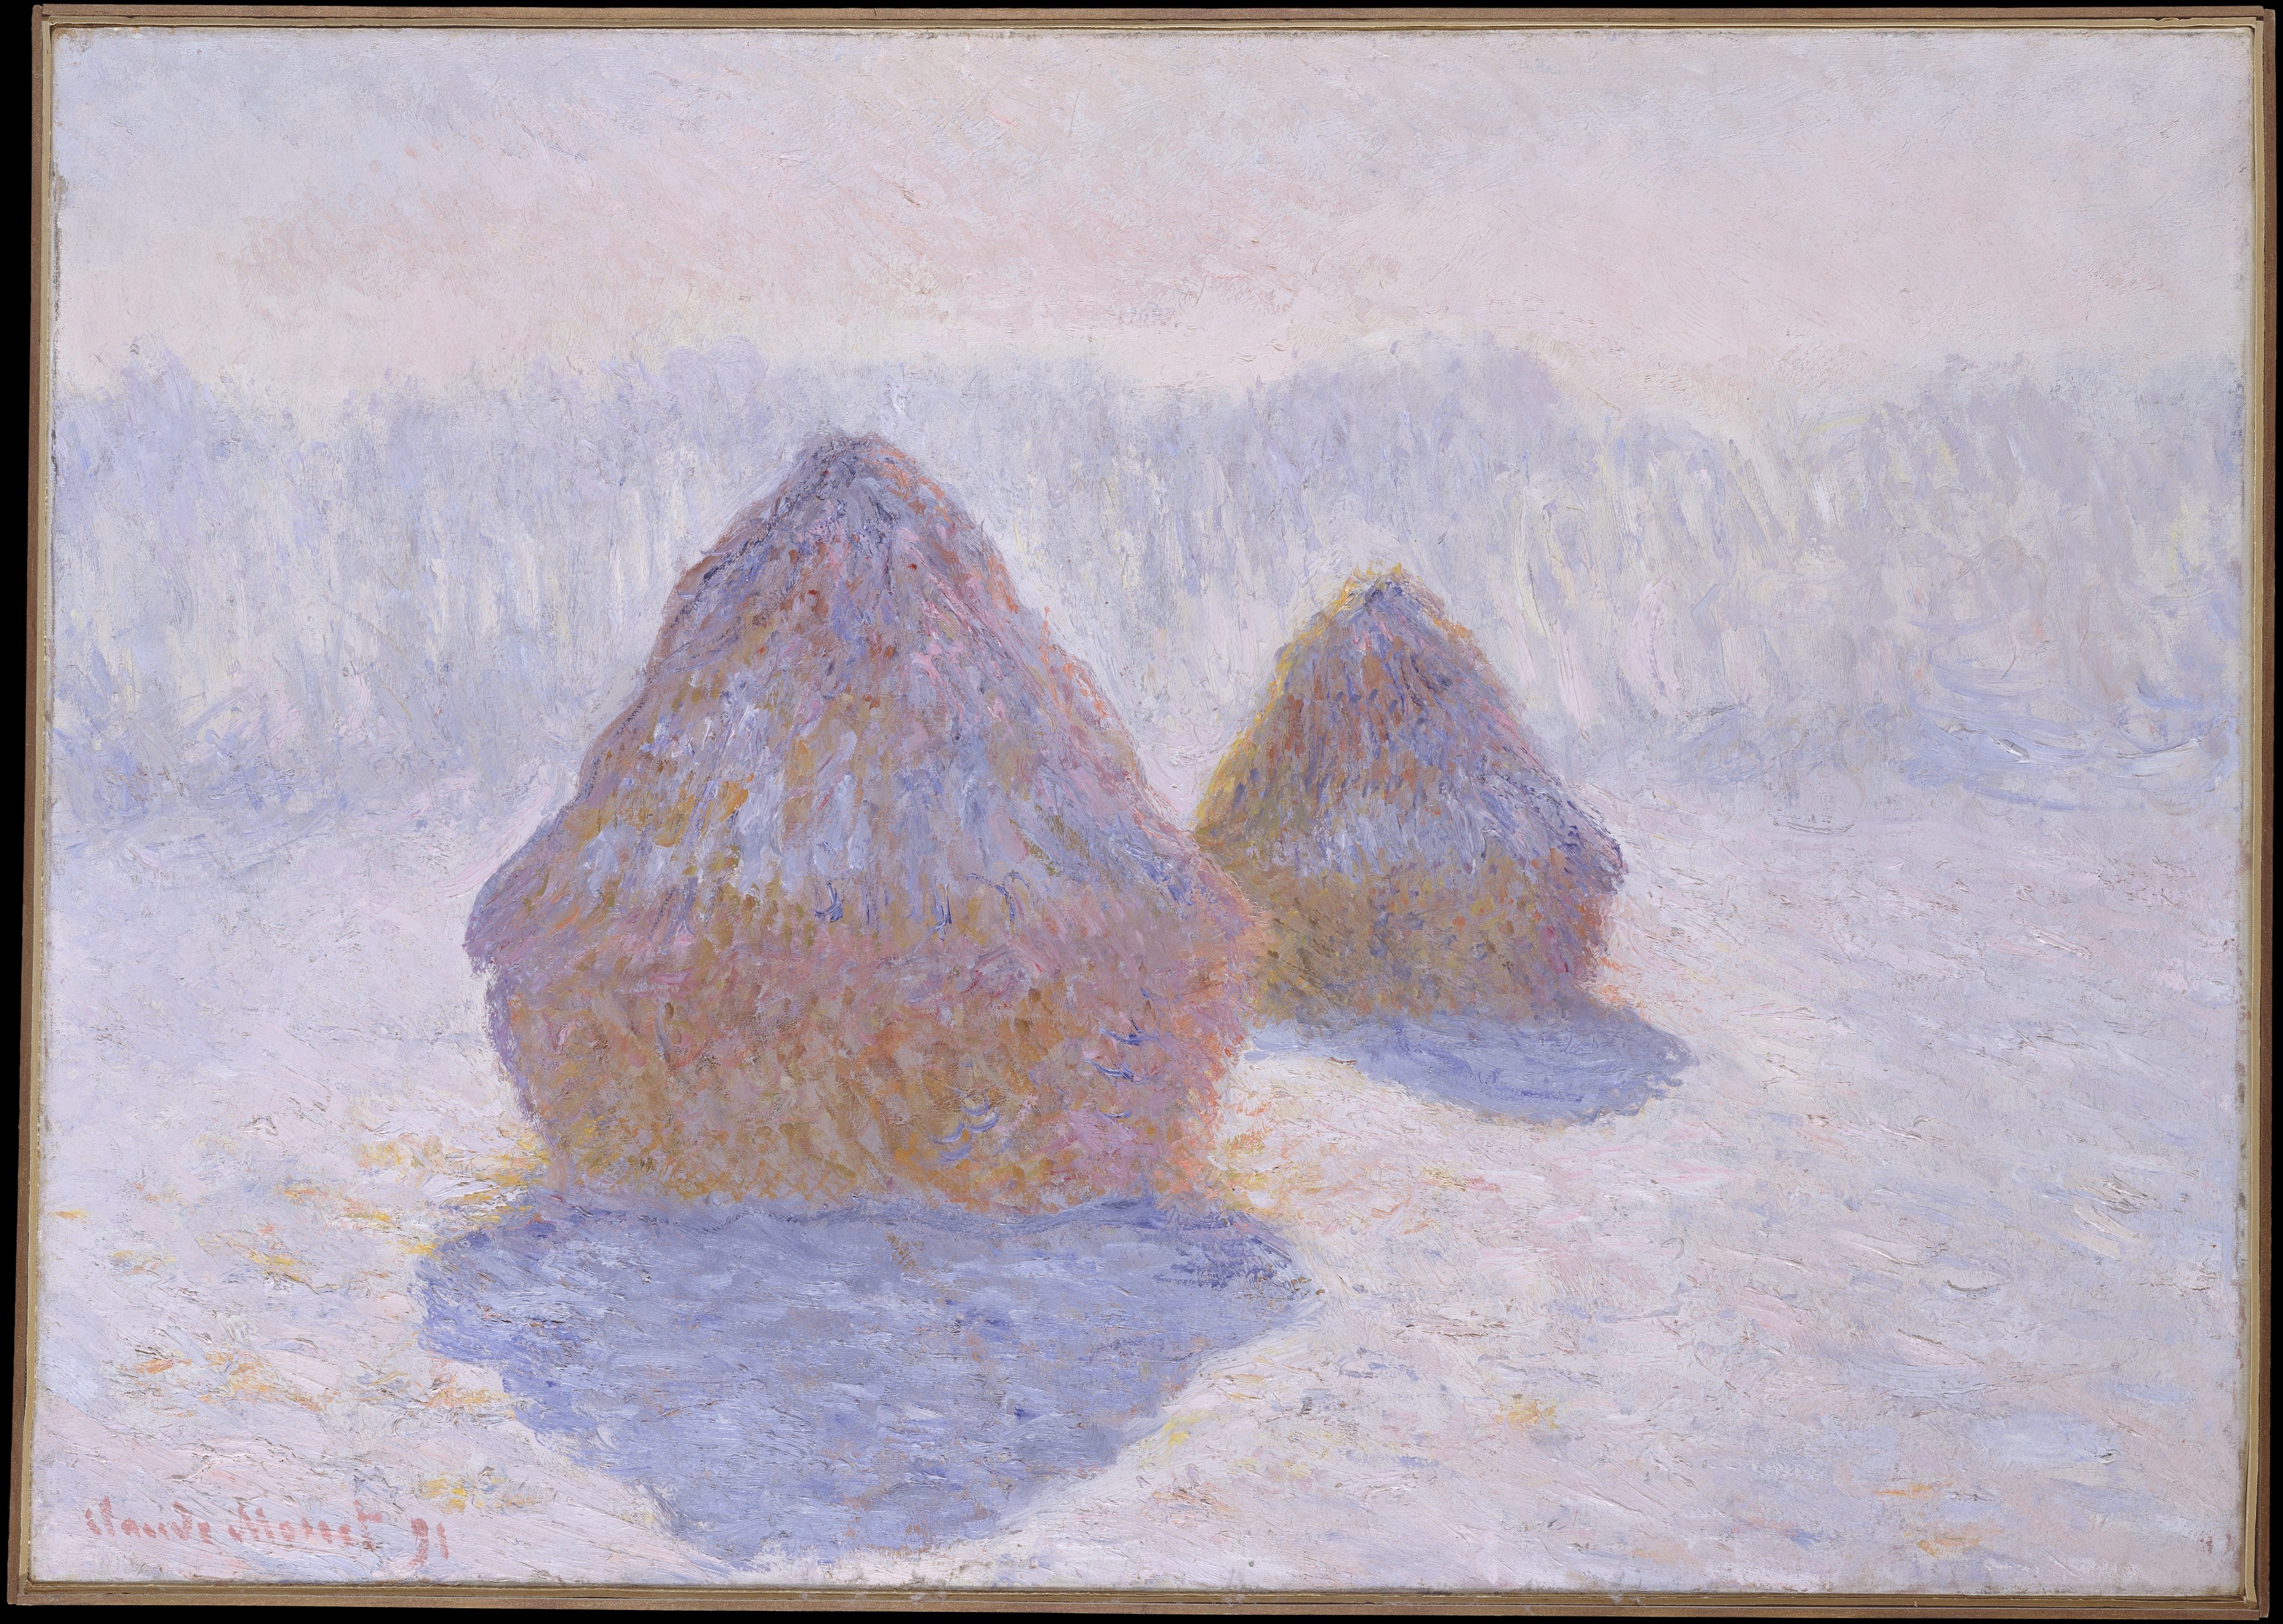 積み藁（雪と日光の効果） by Claude Monet - 1891年 - 65.4 x 92.1 cm 